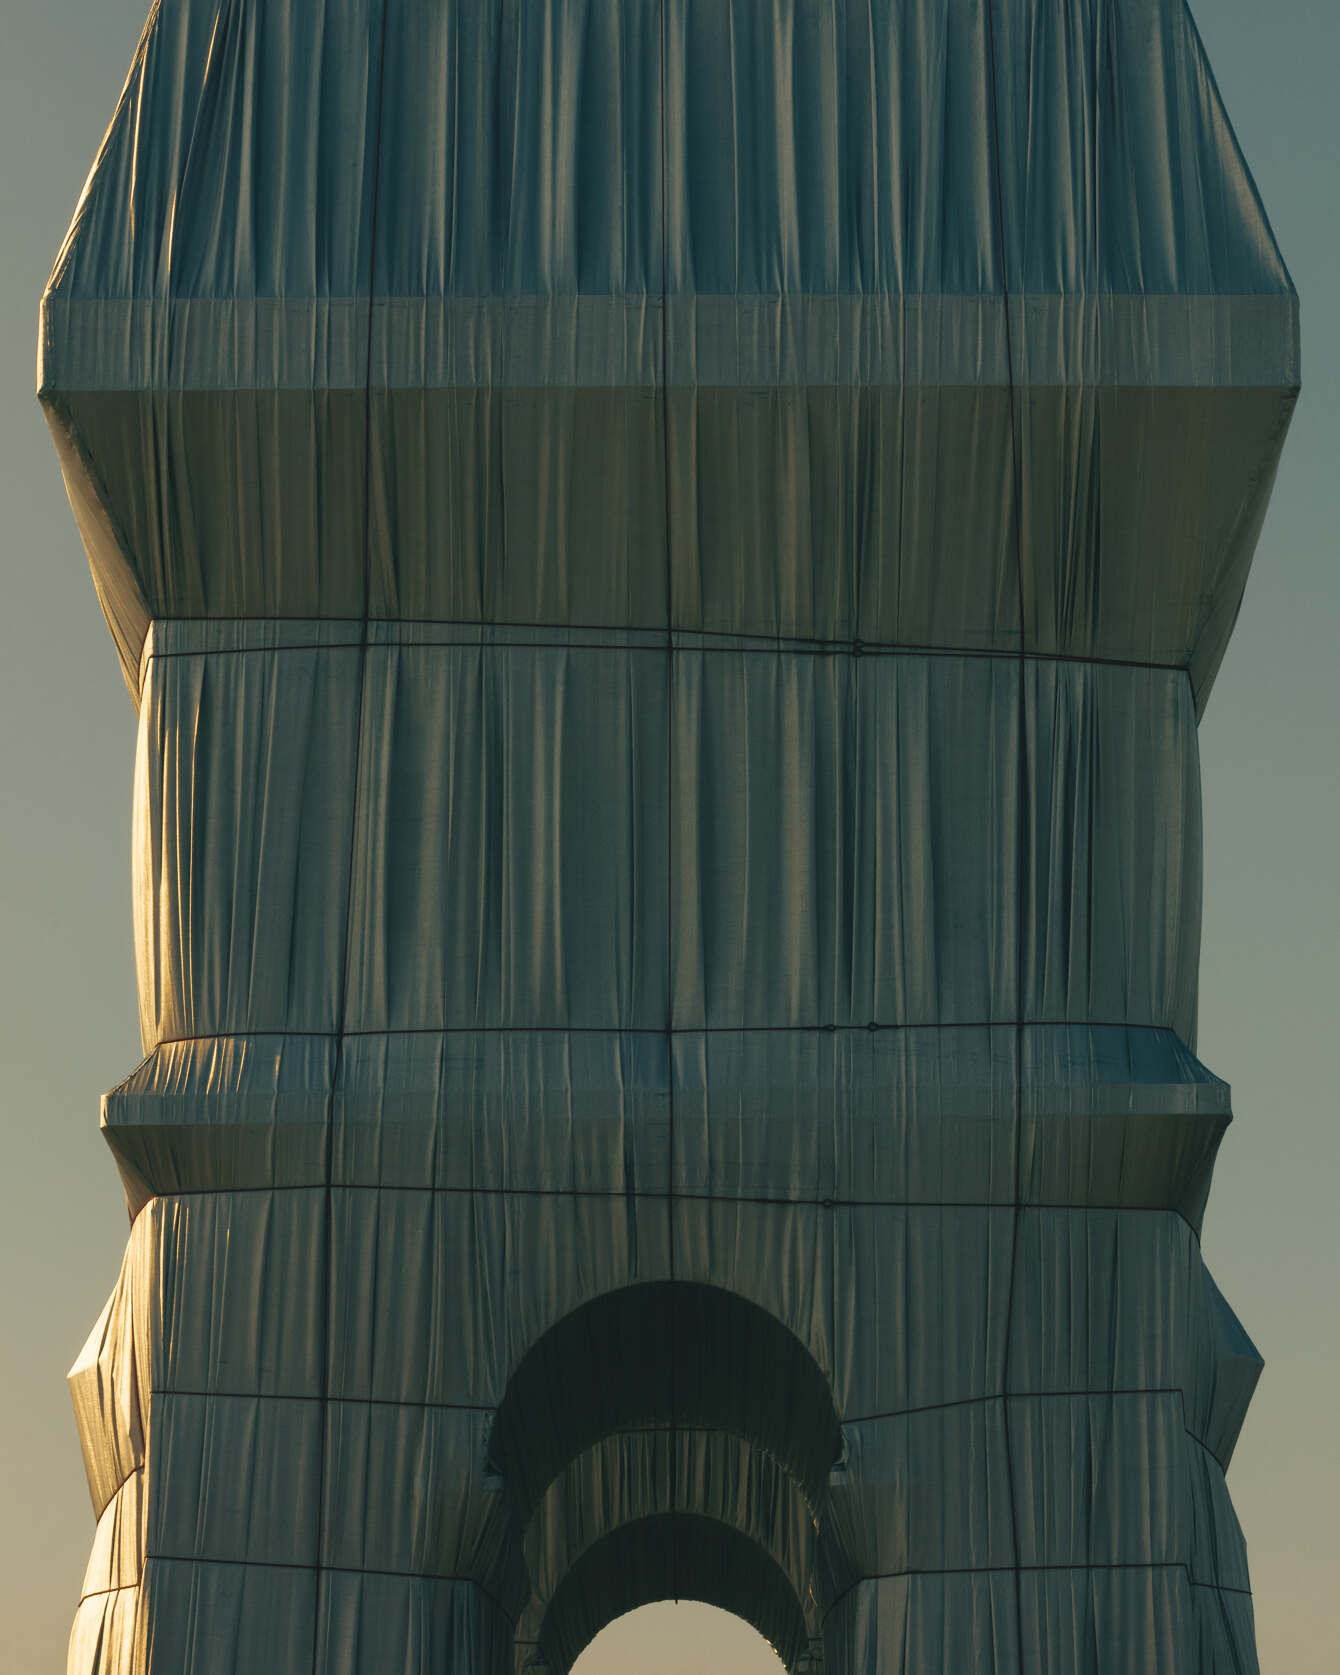 Photographie de l'rc de Triomphe emballé selon l'oeuvre de JC Christo